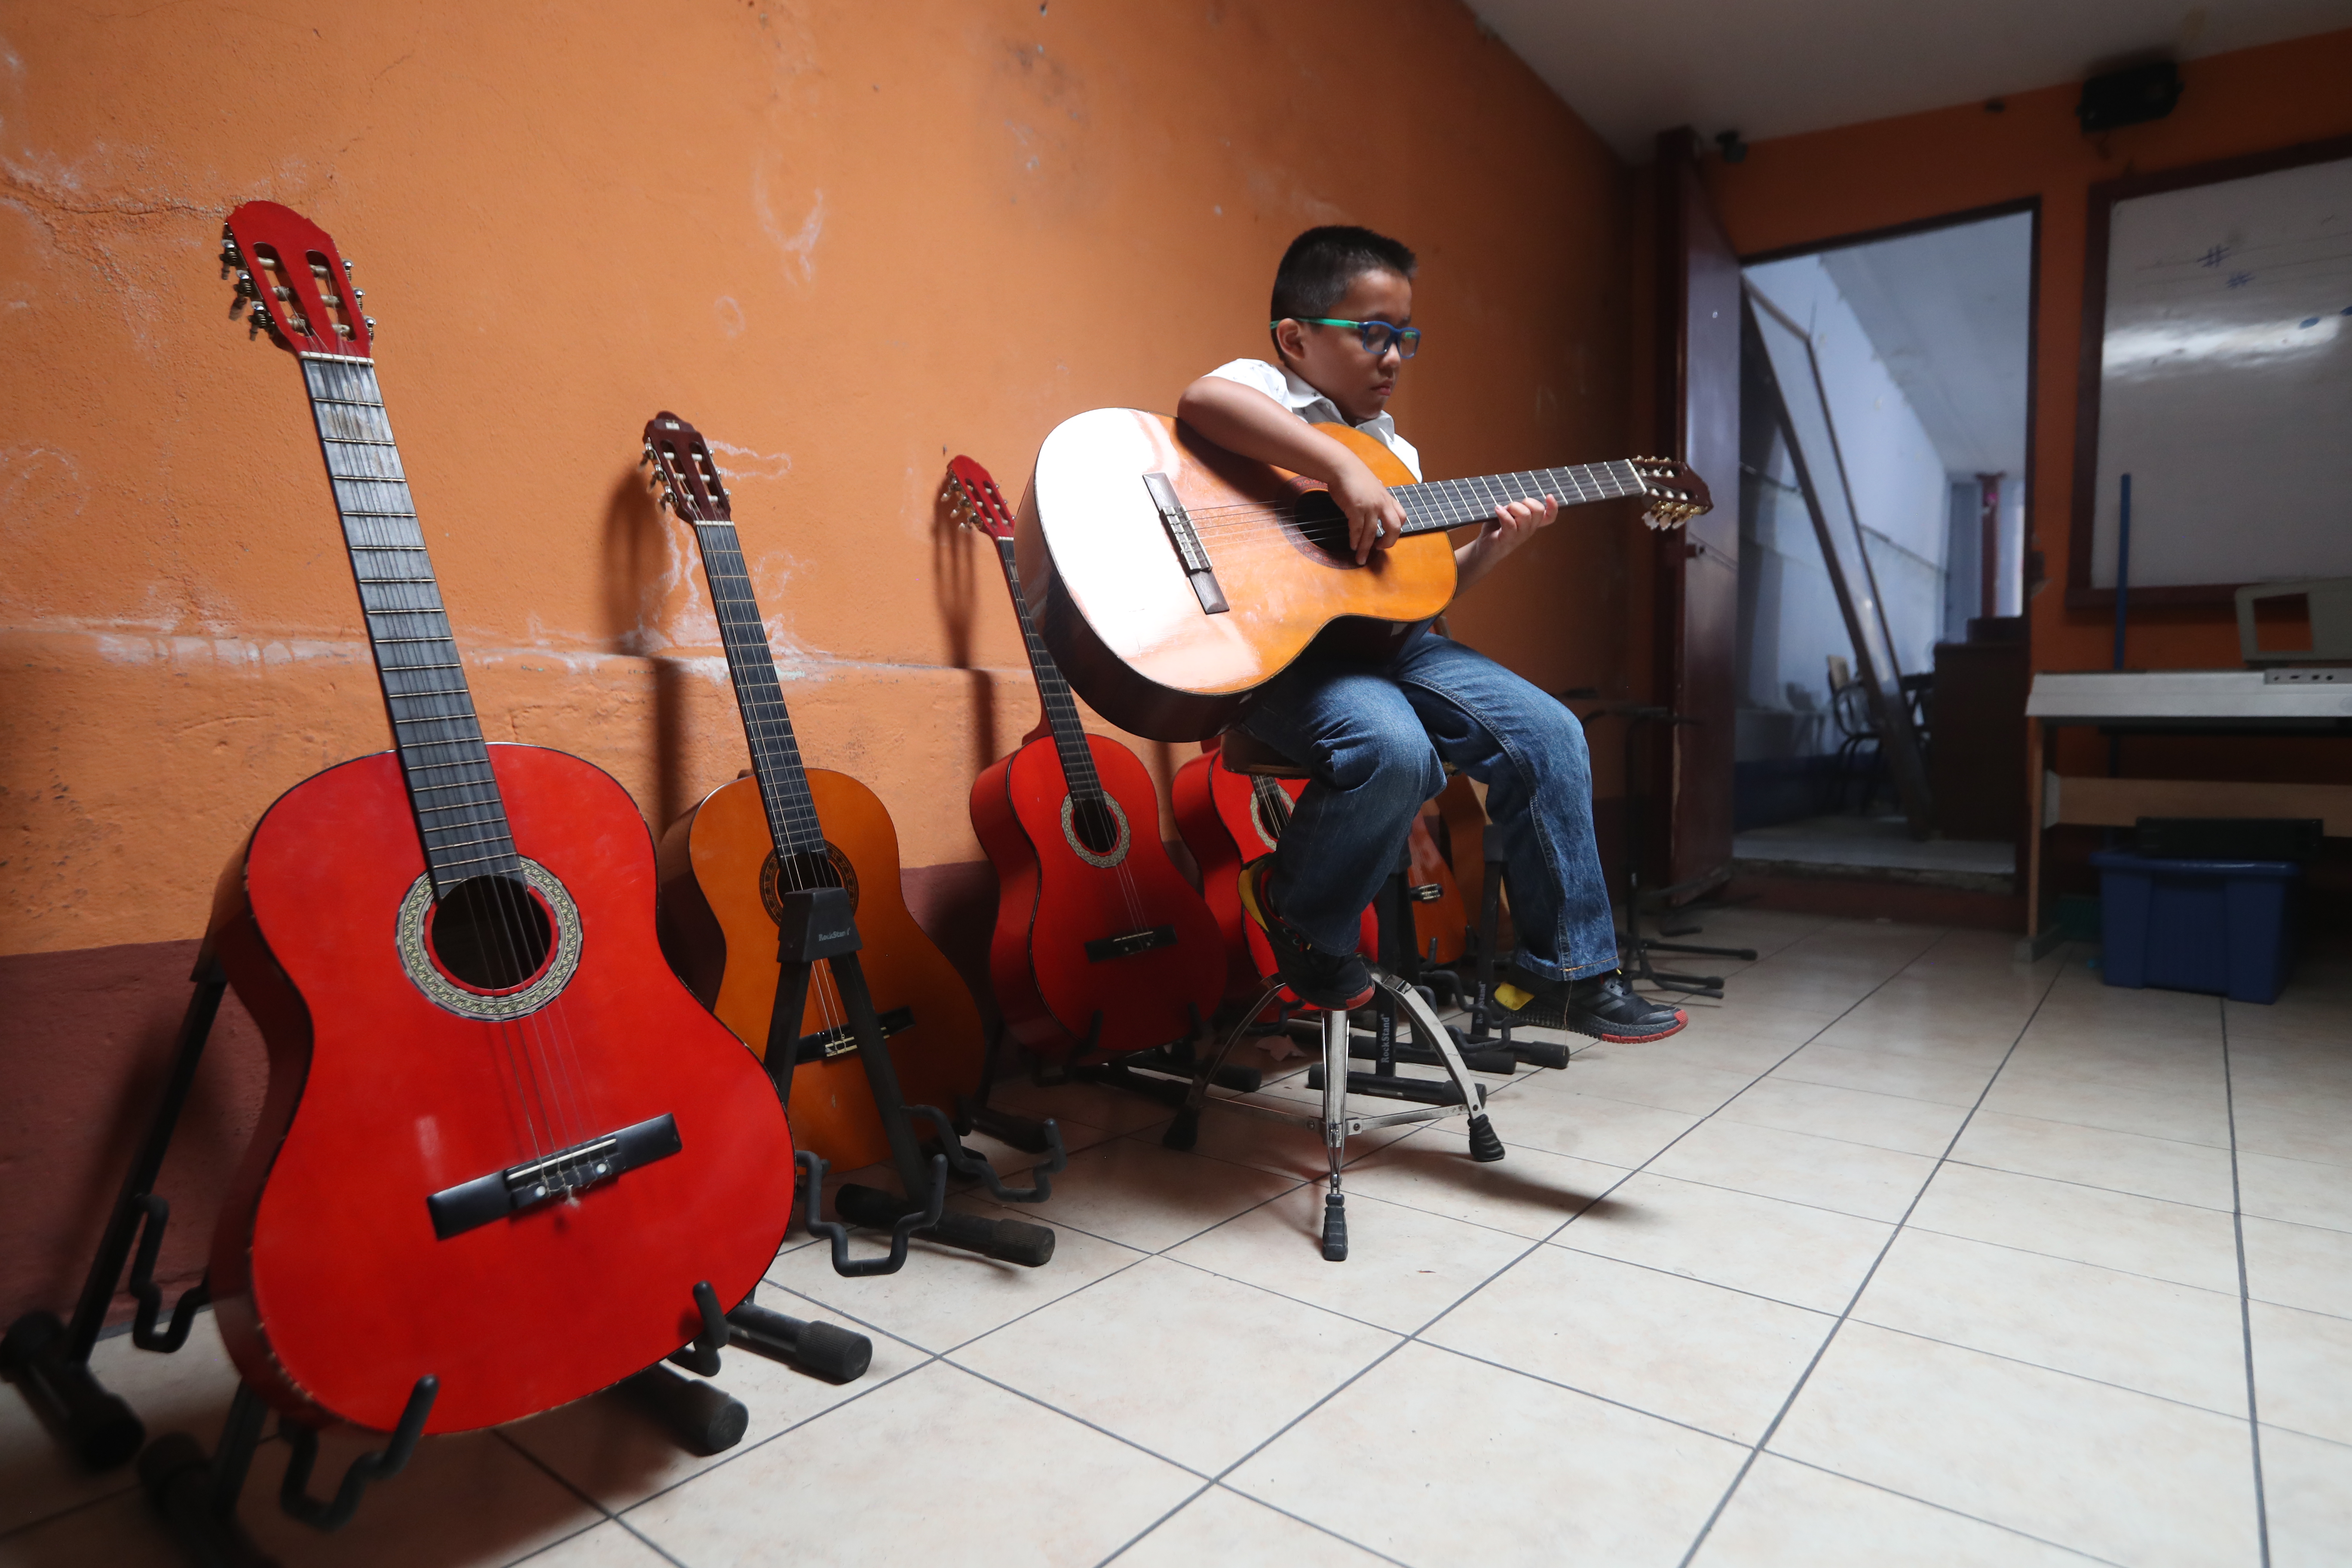 Los desafíos por conseguir el sueño de ser músico en Guatemala